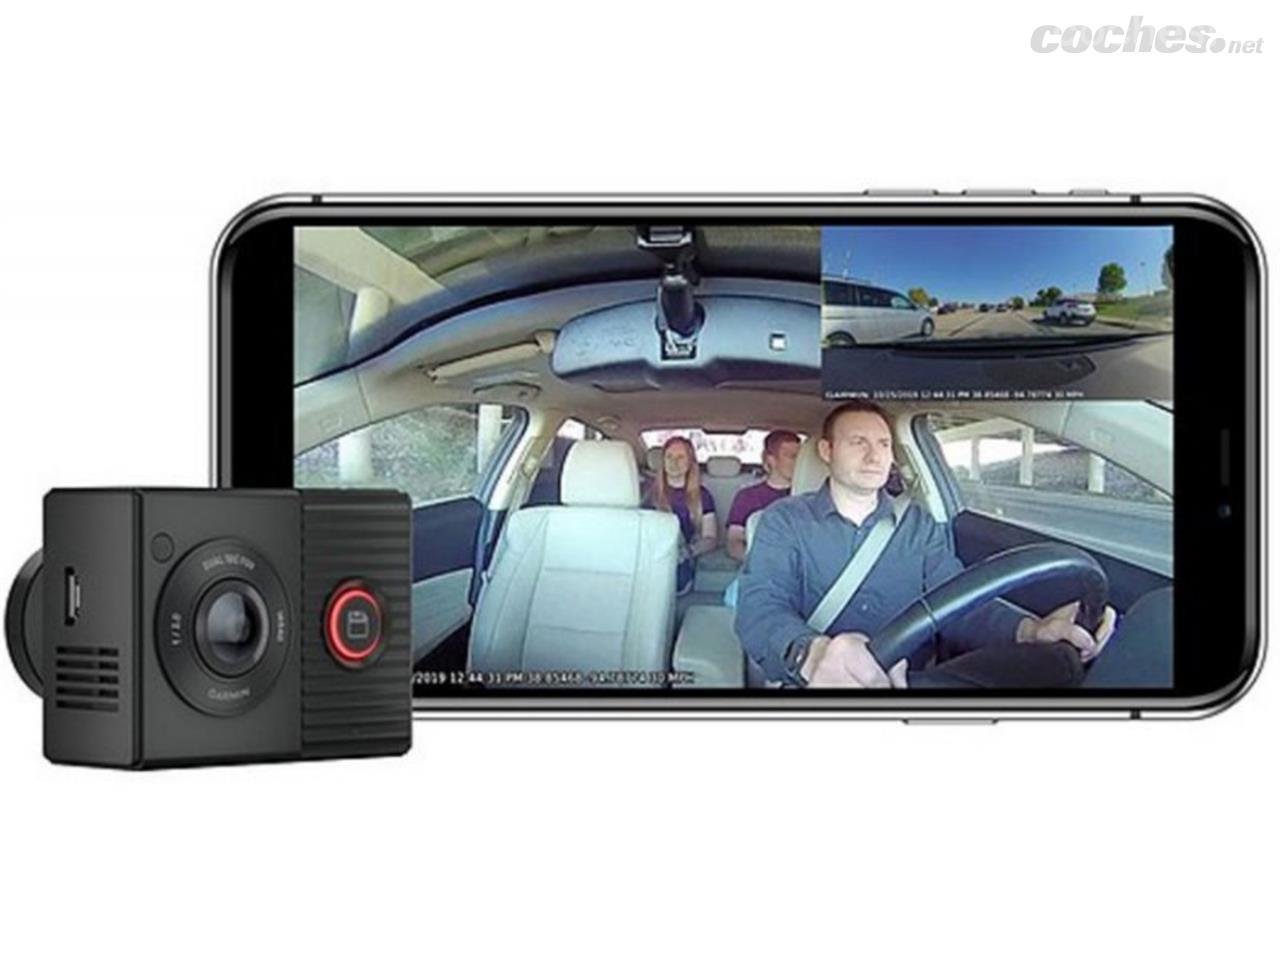 Es legal llevar una cámara en el coche?